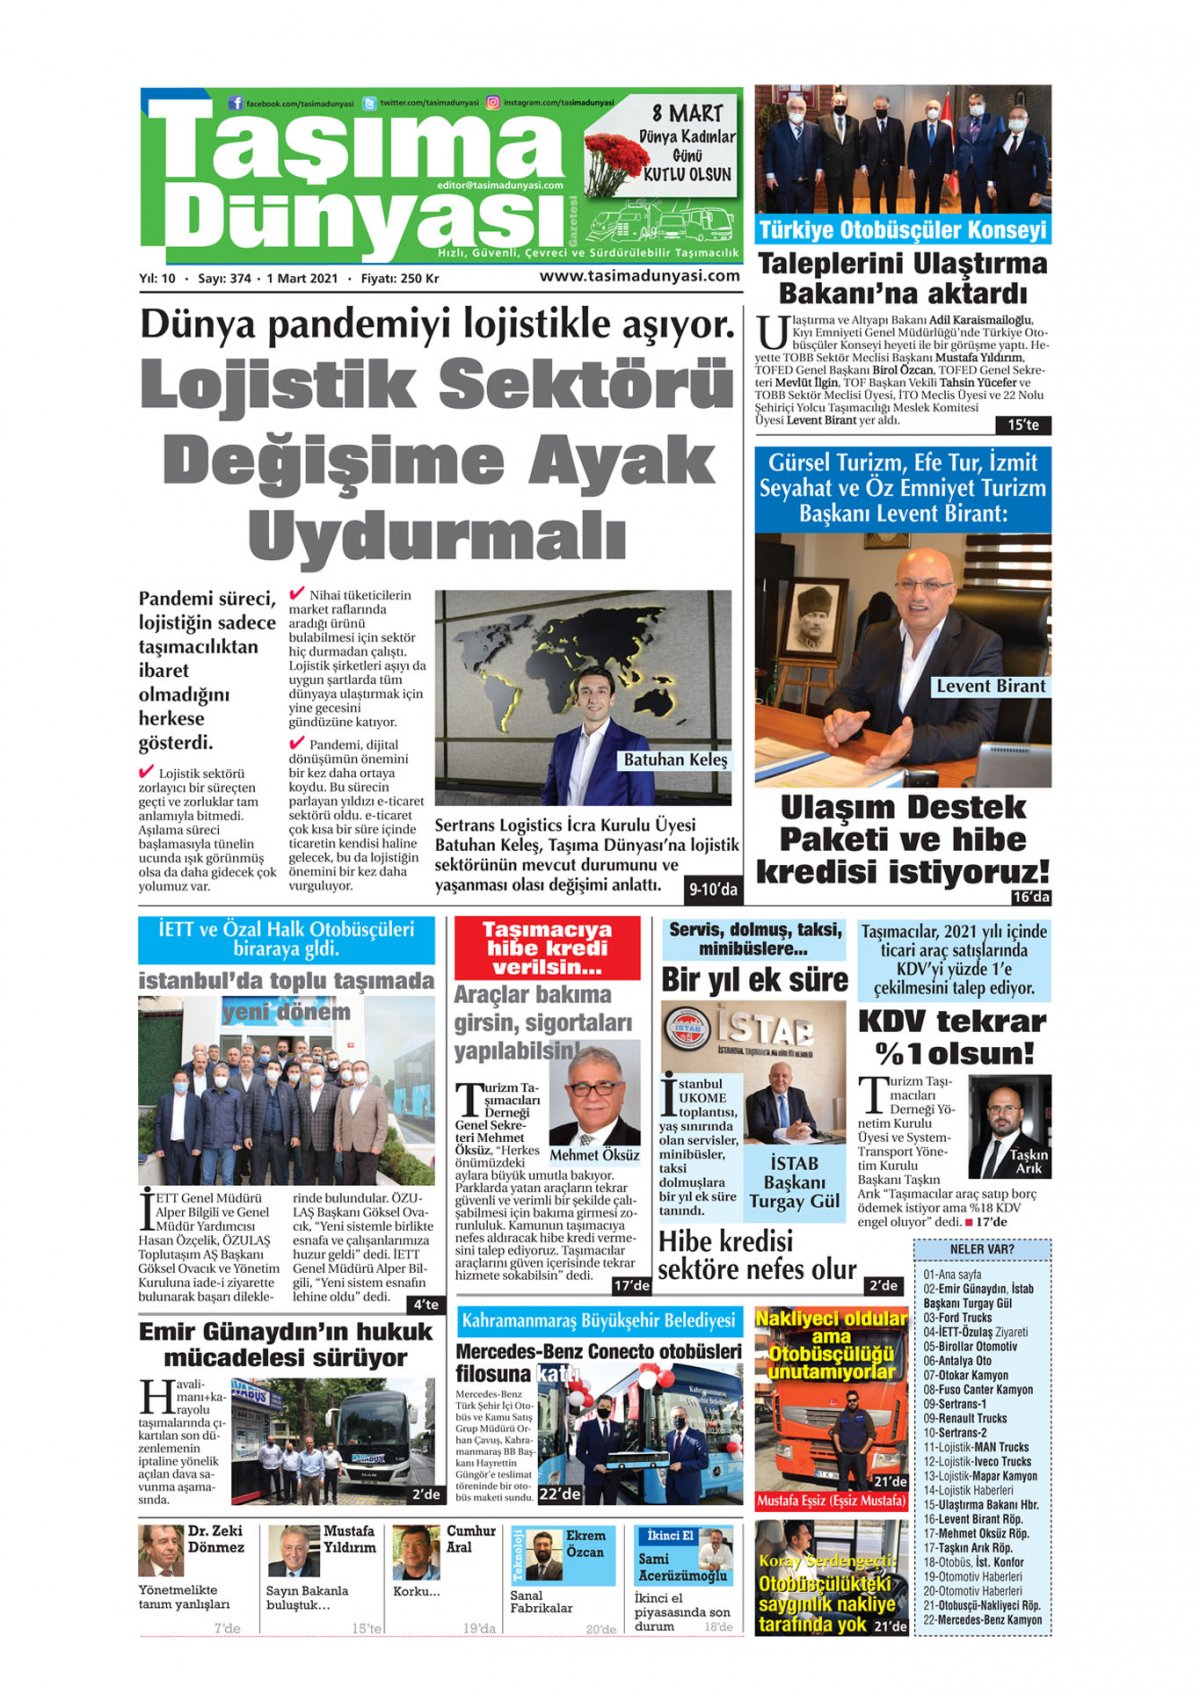 Taşıma Dünyası Gazetesi - 01.03.2021 Manşeti